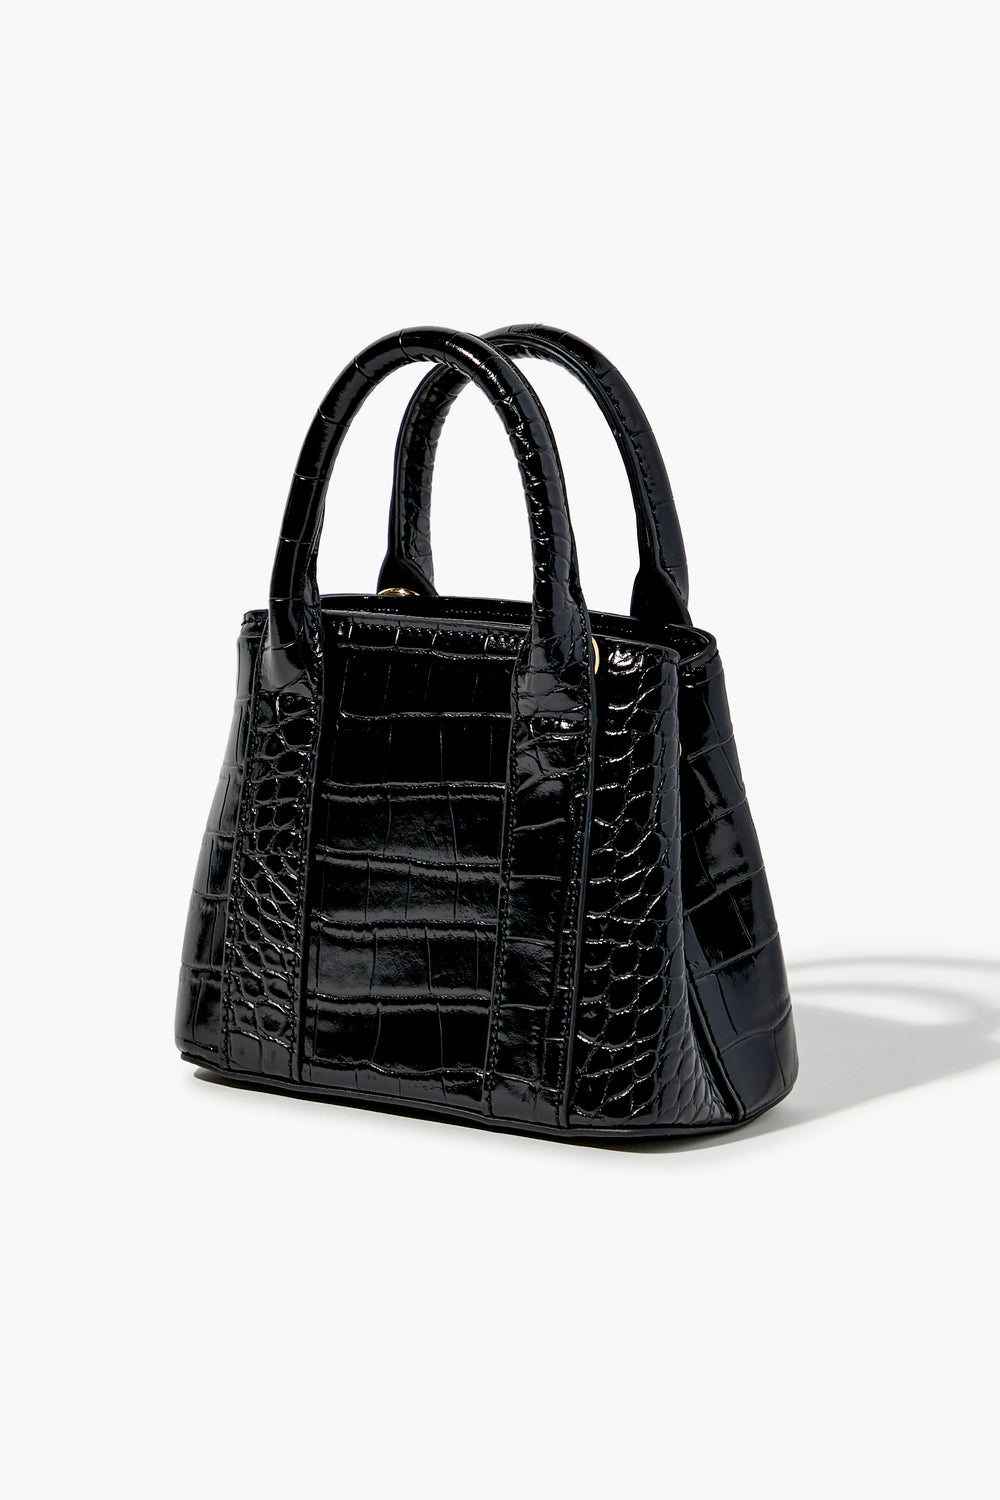 Faux Patent Croc Leather Handbag Black